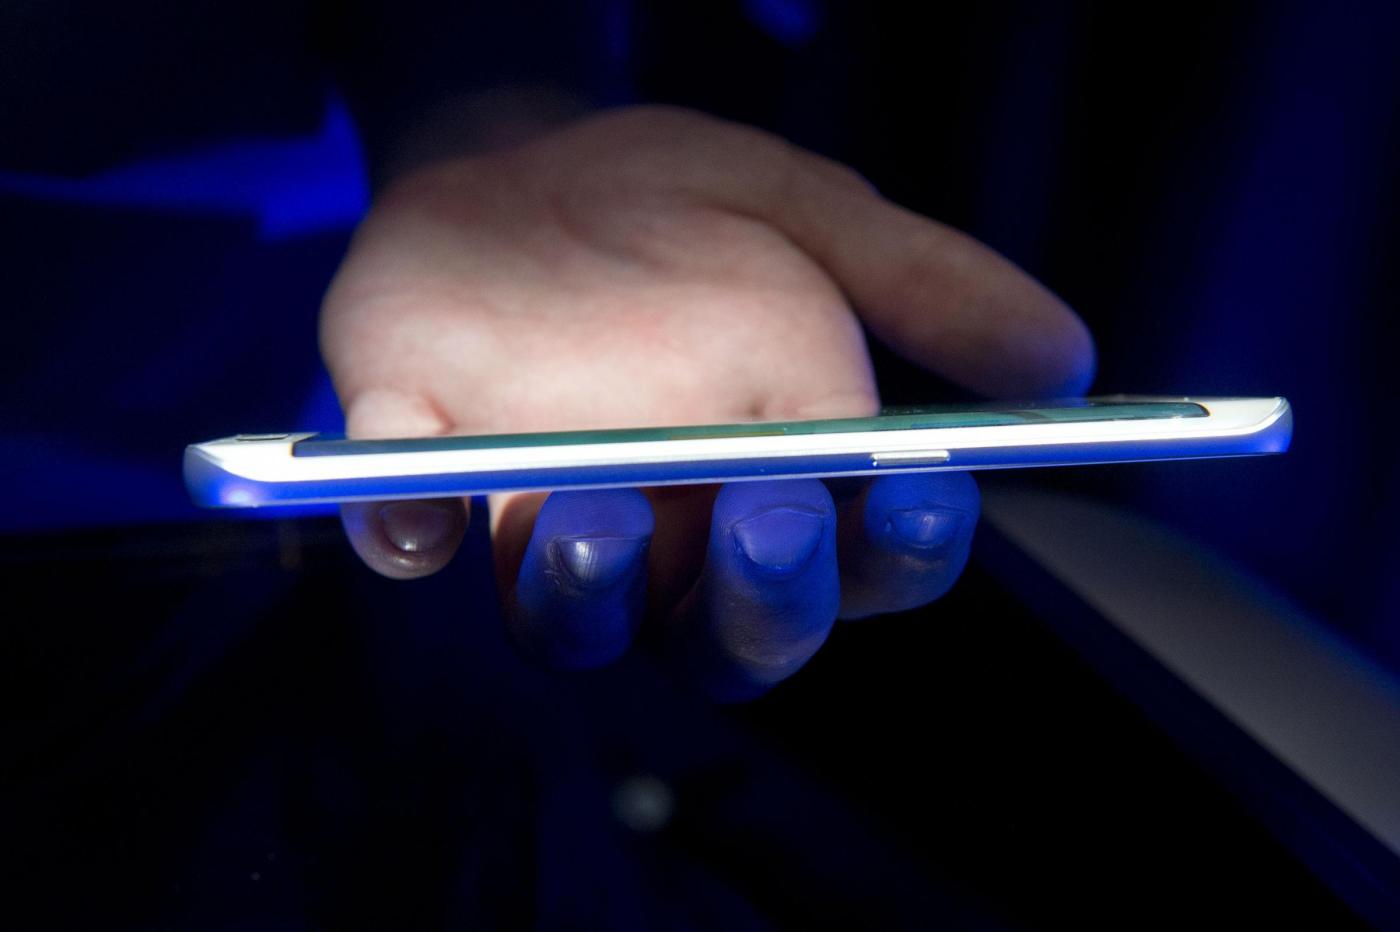 Samsung svela i nuovi Galaxy S6 e Galaxy S6 edge